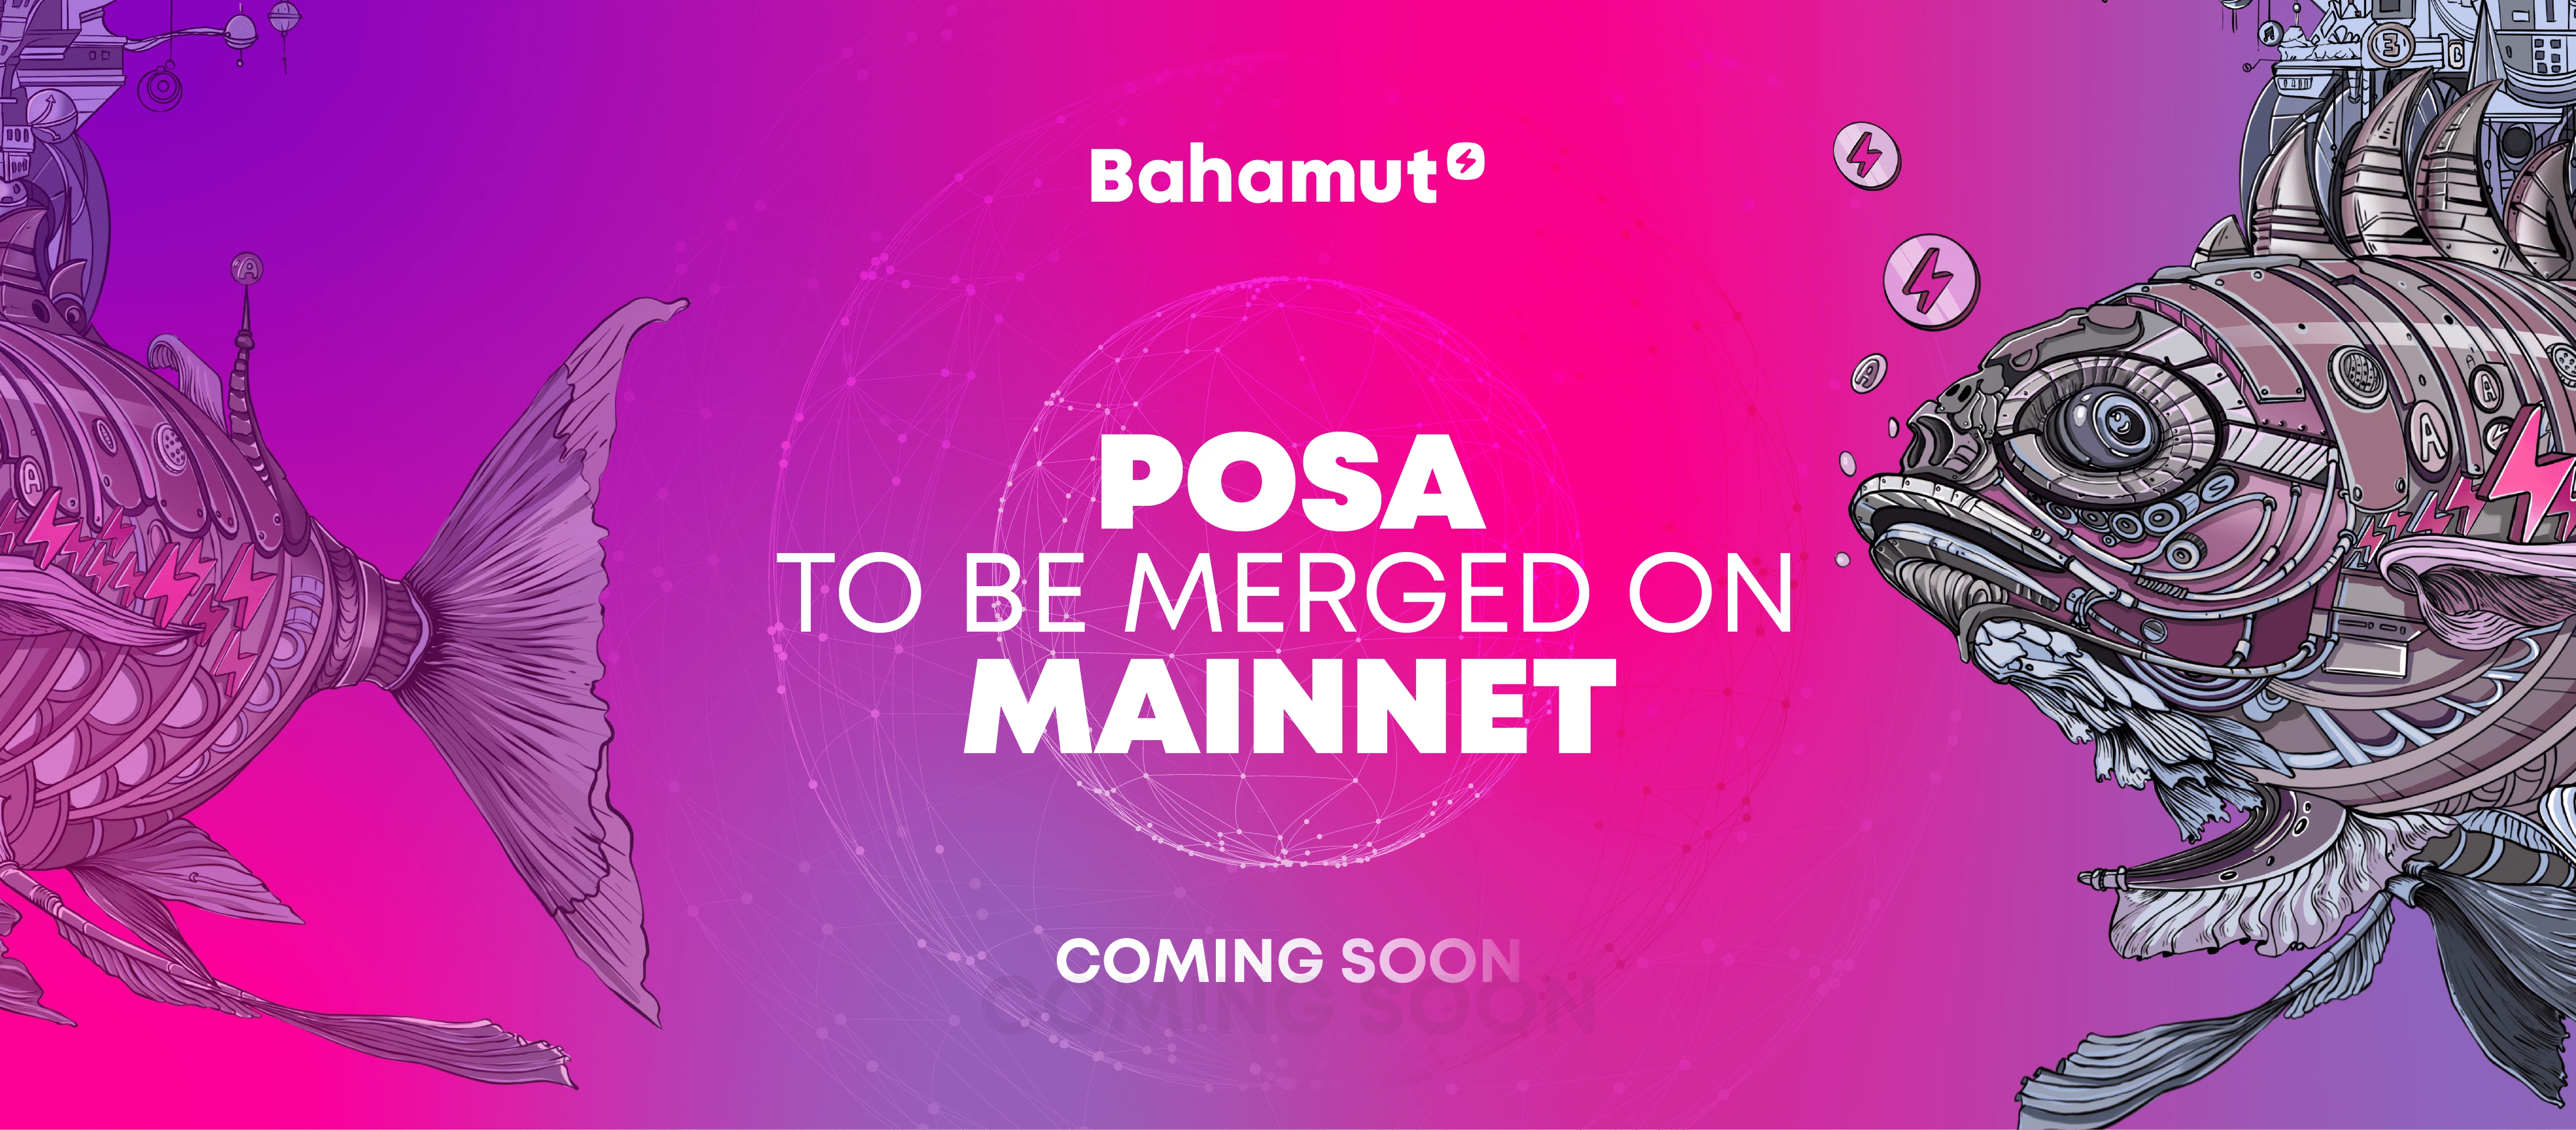 Bahamut успешно завершил внедрение PoSA в Oasis testnet, вскоре последует внедрение в mainnet